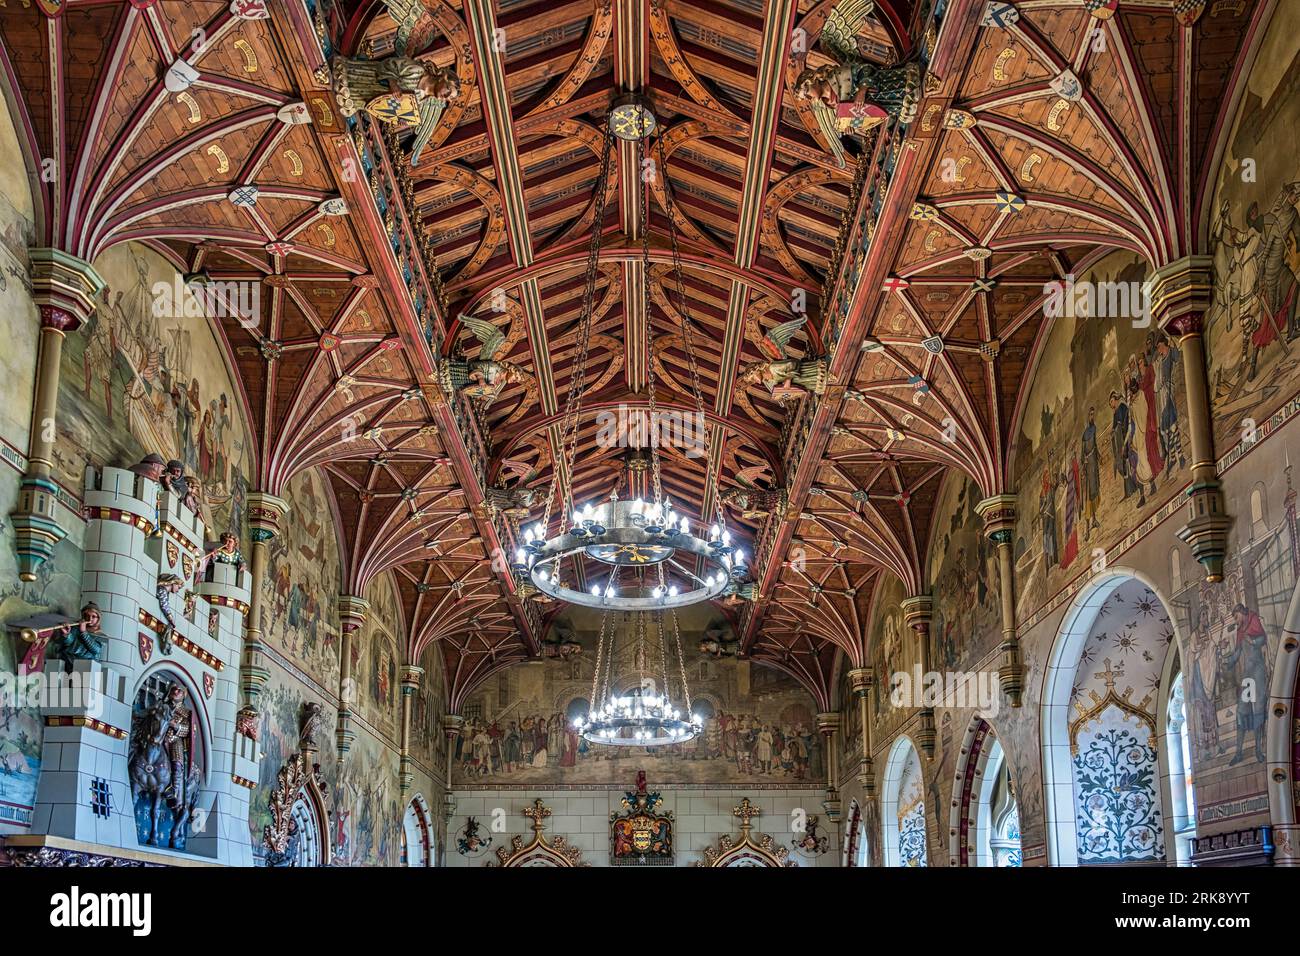 All'interno del Castello di Cardiff. Questa camera splendidamente decorata è la sala banchetti. Foto Stock